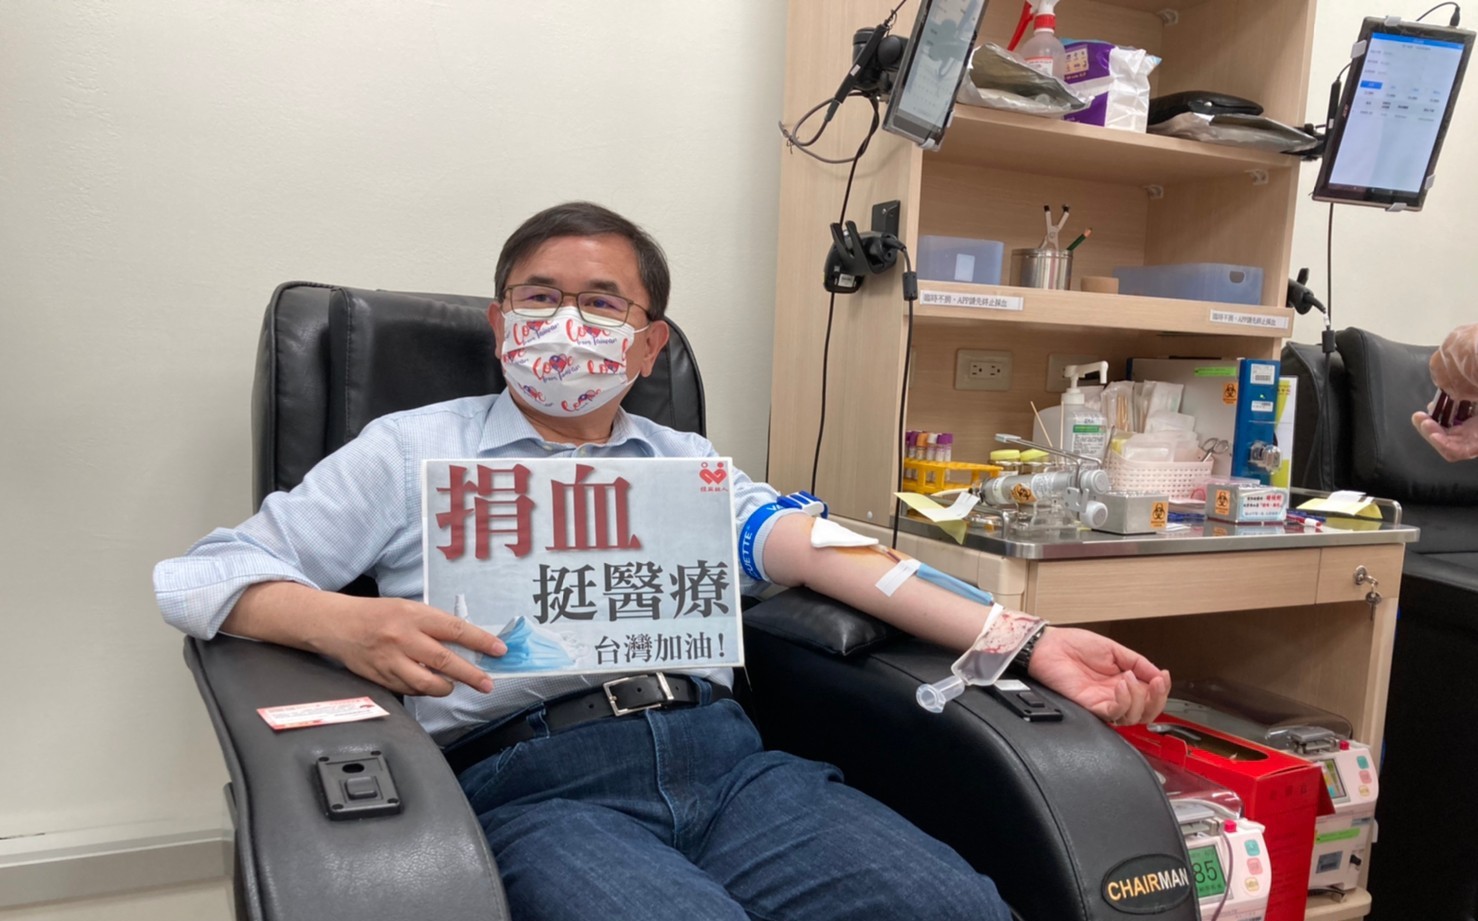 全台大缺血「20年來最慘」綠委挽袖捐血挺醫療 籲民眾熱血響應 | 政治